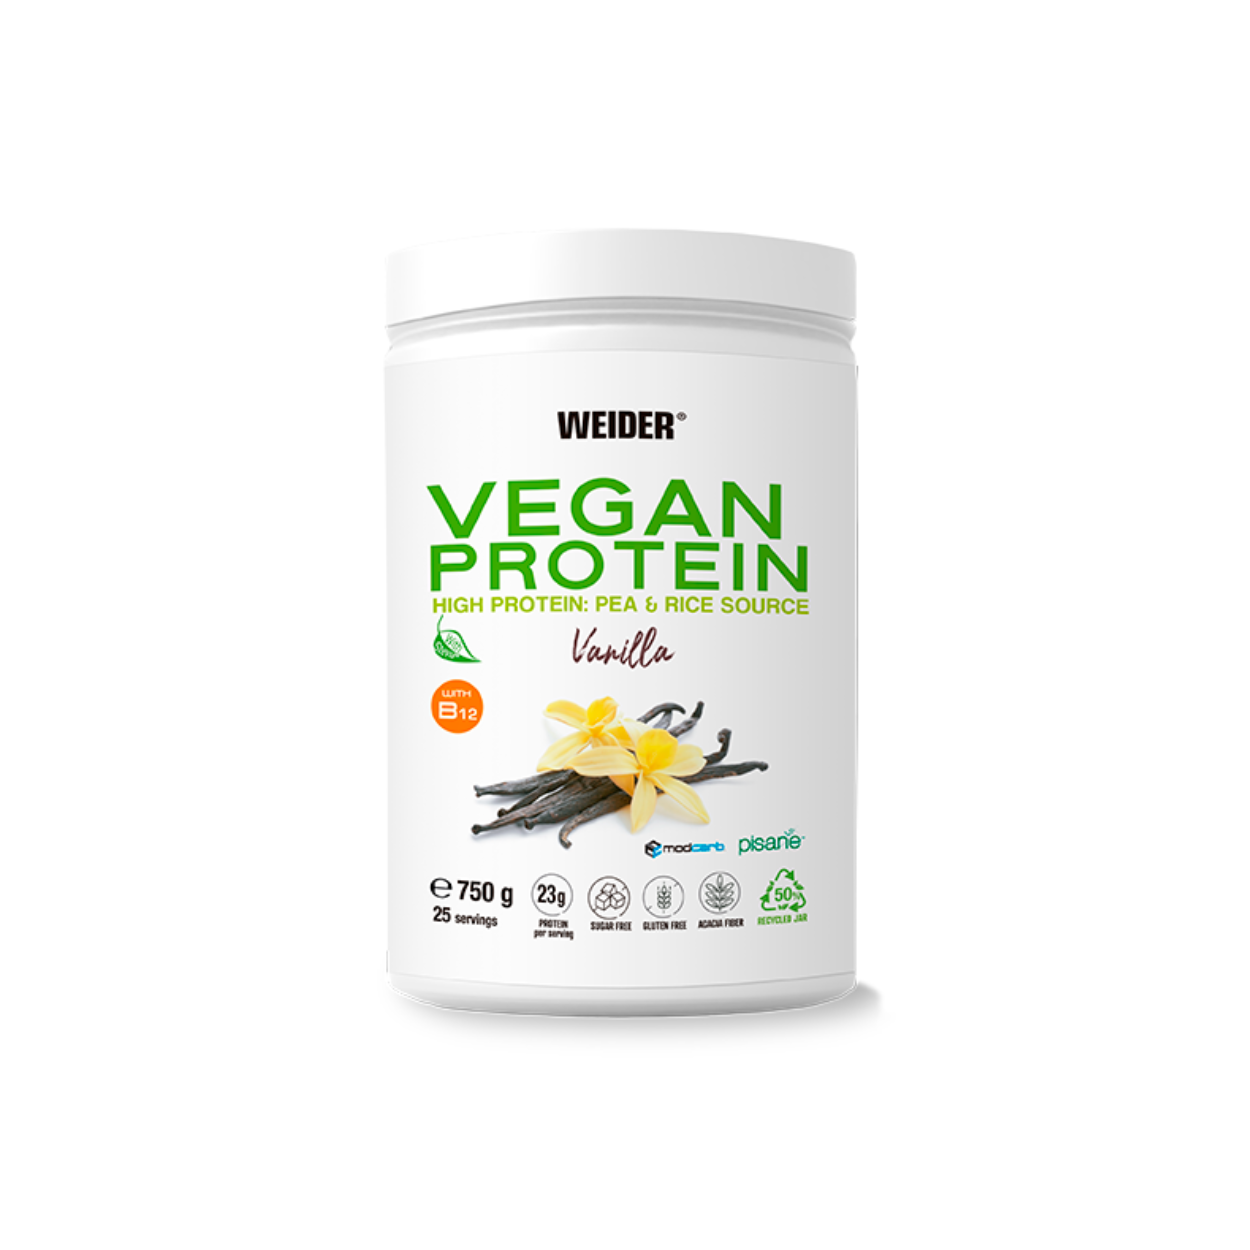 Weider Vegan Protein Vanilla (750g Dose)